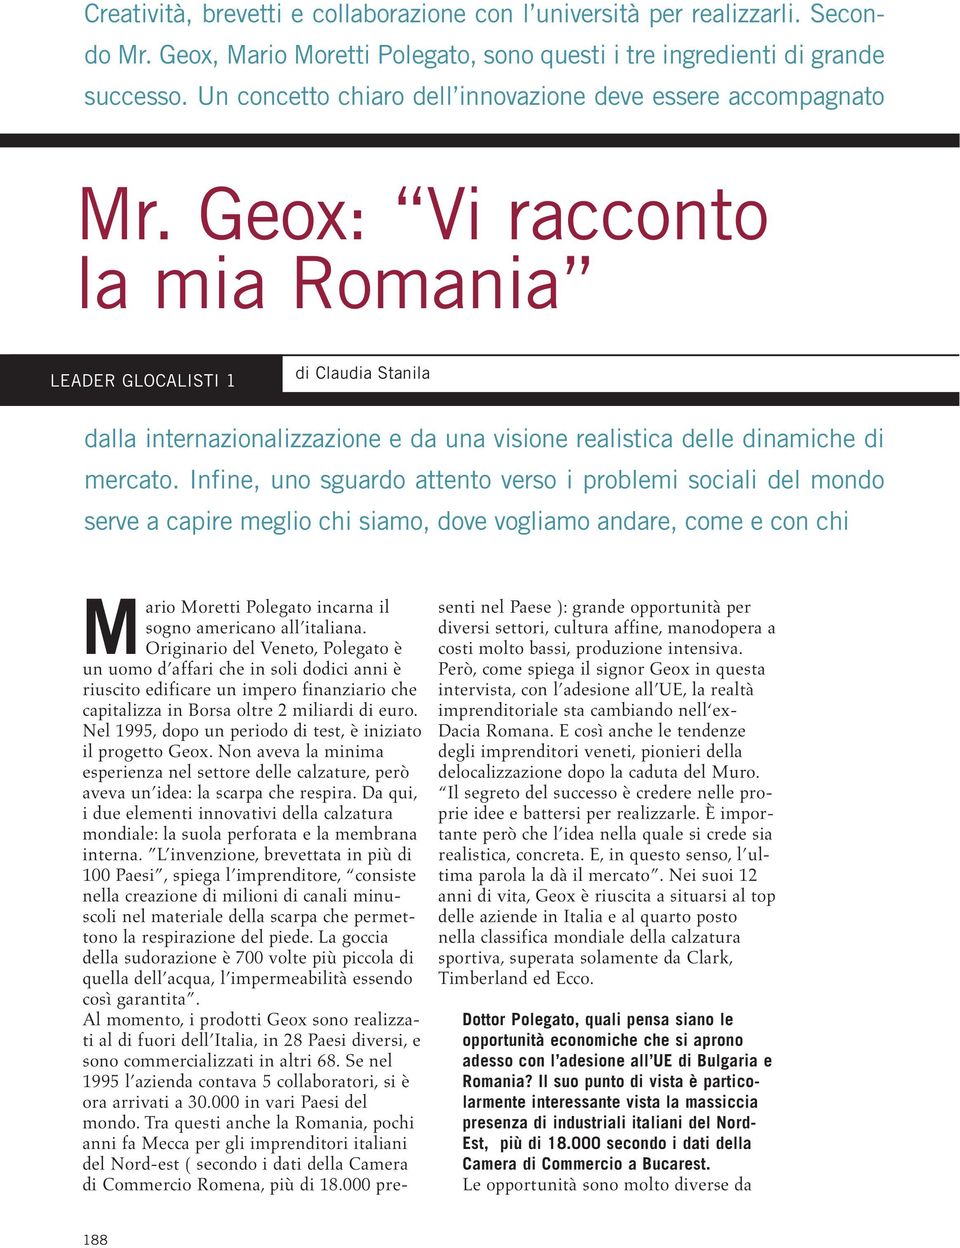 Geox: Vi racconto la mia Romania LEADER GLOCALISTI 1 di Claudia Stanila dalla internazionalizzazione e da una visione realistica delle dinamiche di mercato.